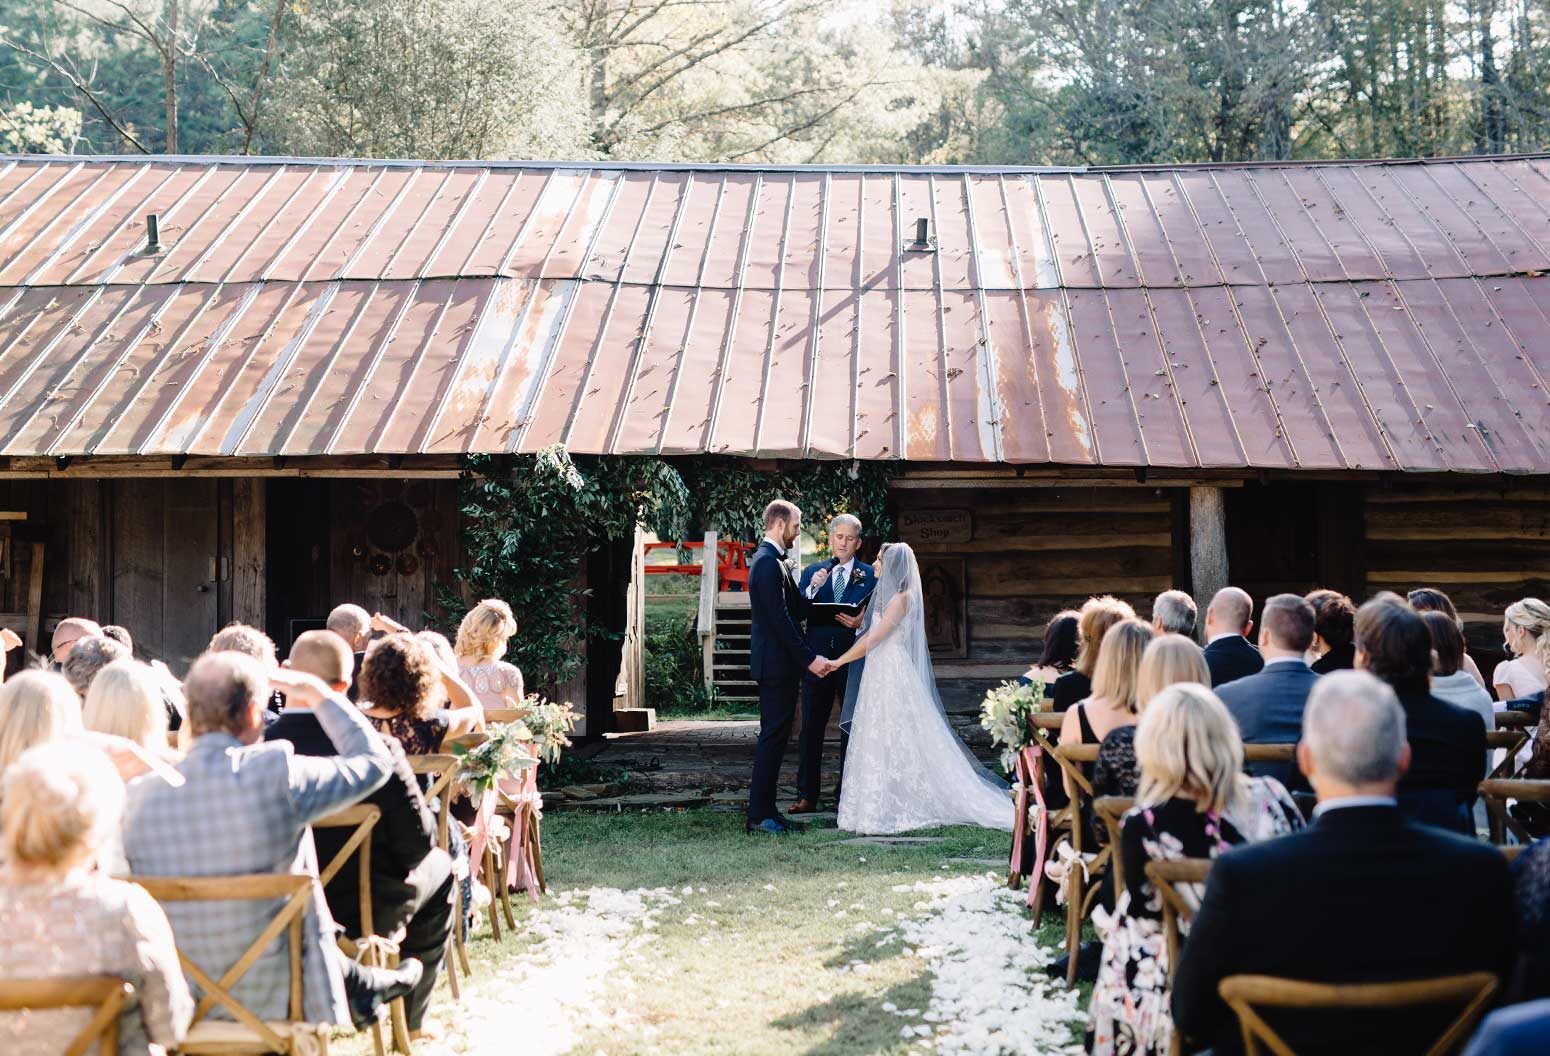 Large barn weddings at The Mast Farm Inn